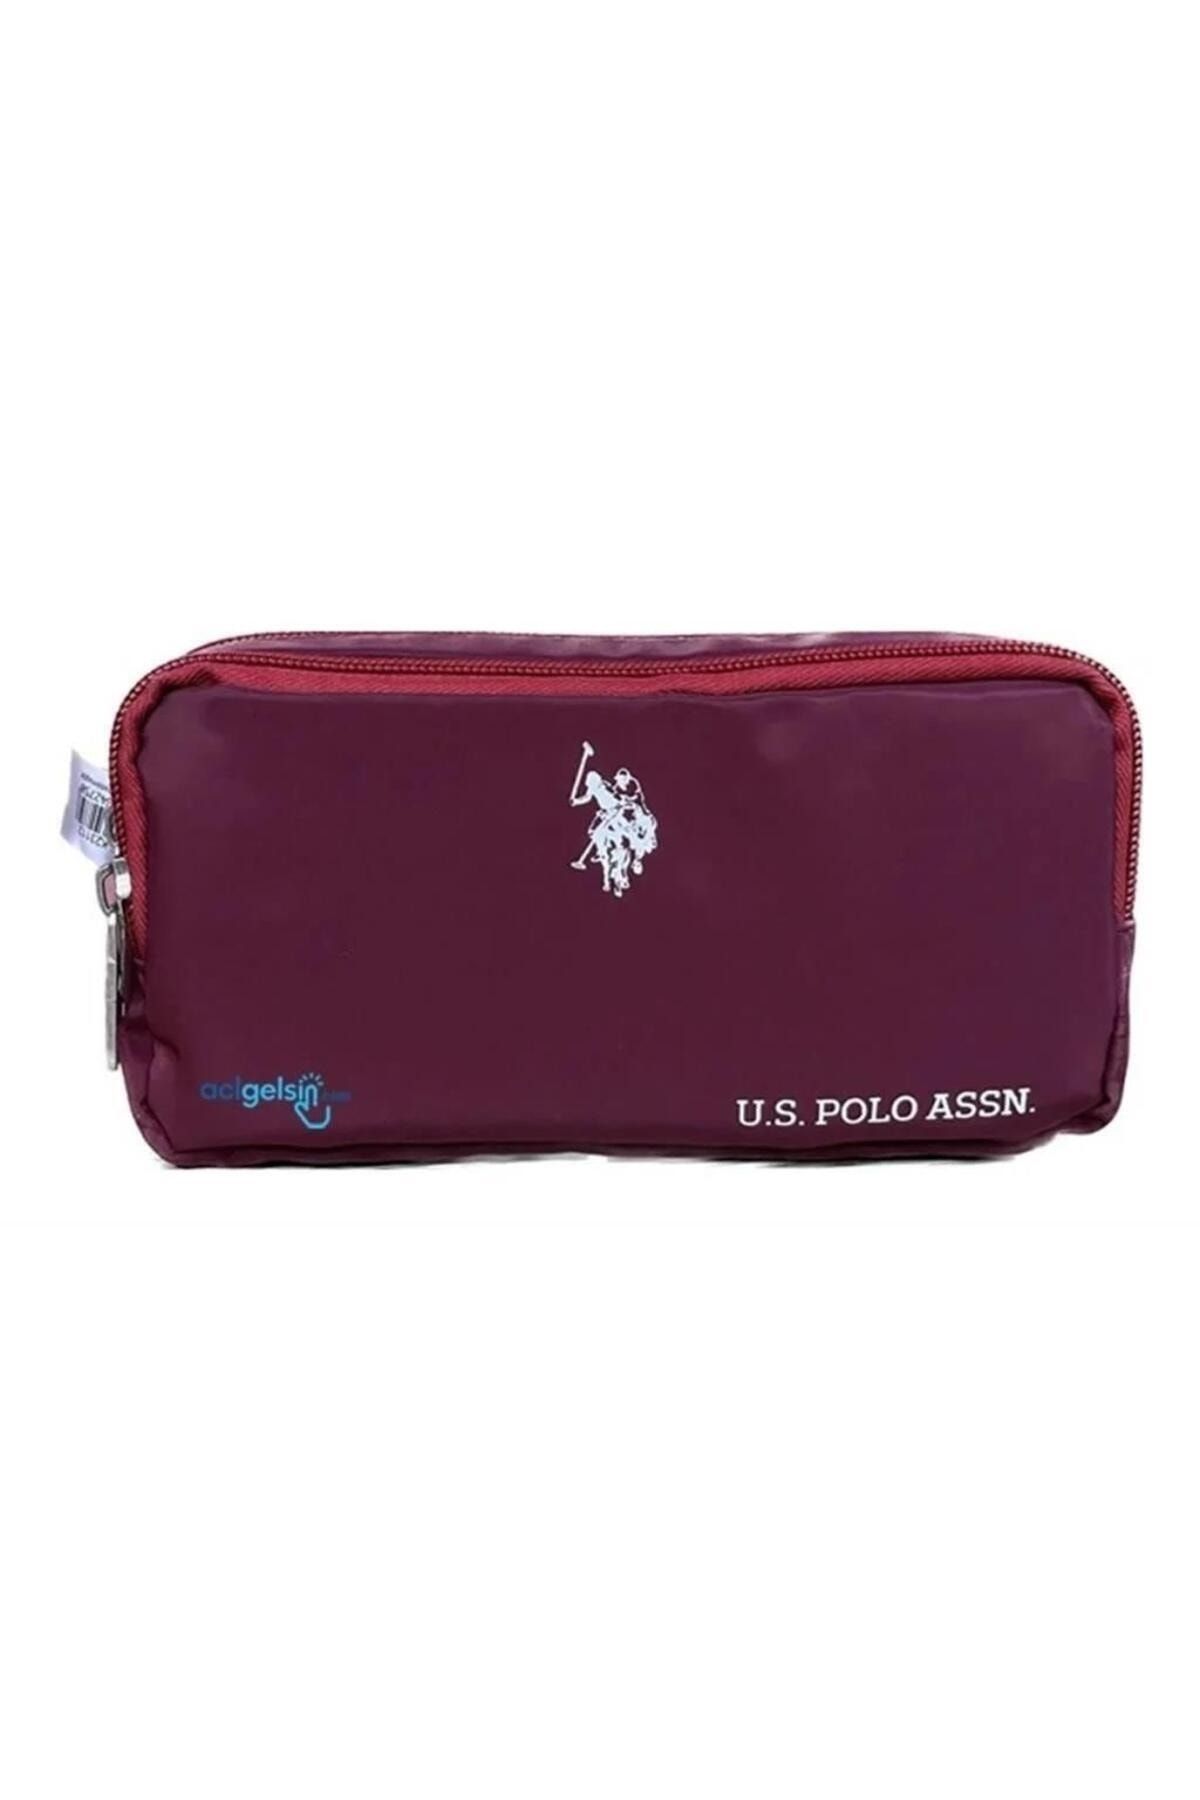 U.S. Polo Assn. Us Polo Çift Gözlü Kalem Çantası PLKLK23112